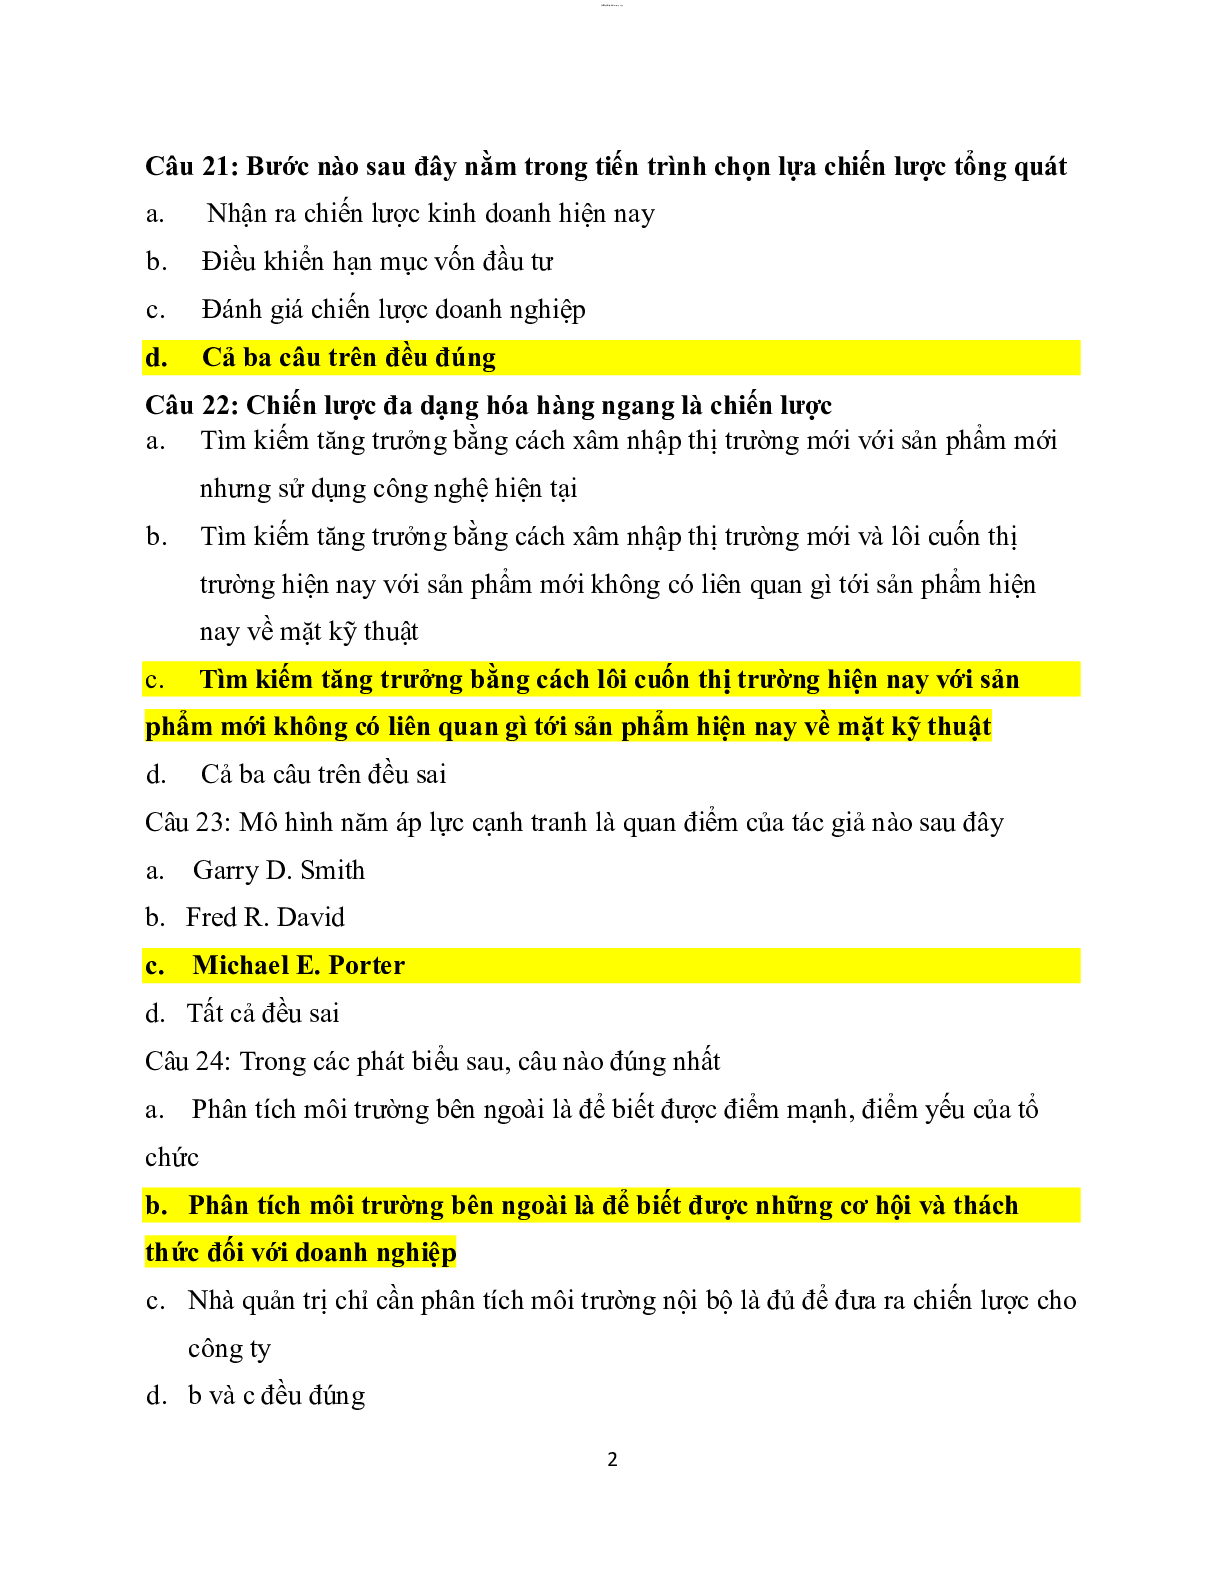 Ngân hàng câu hỏi trắc nghiệm Quản trị chiến lược (có đáp án) Trường Đại học Tài Chính - Marketing (trang 1)